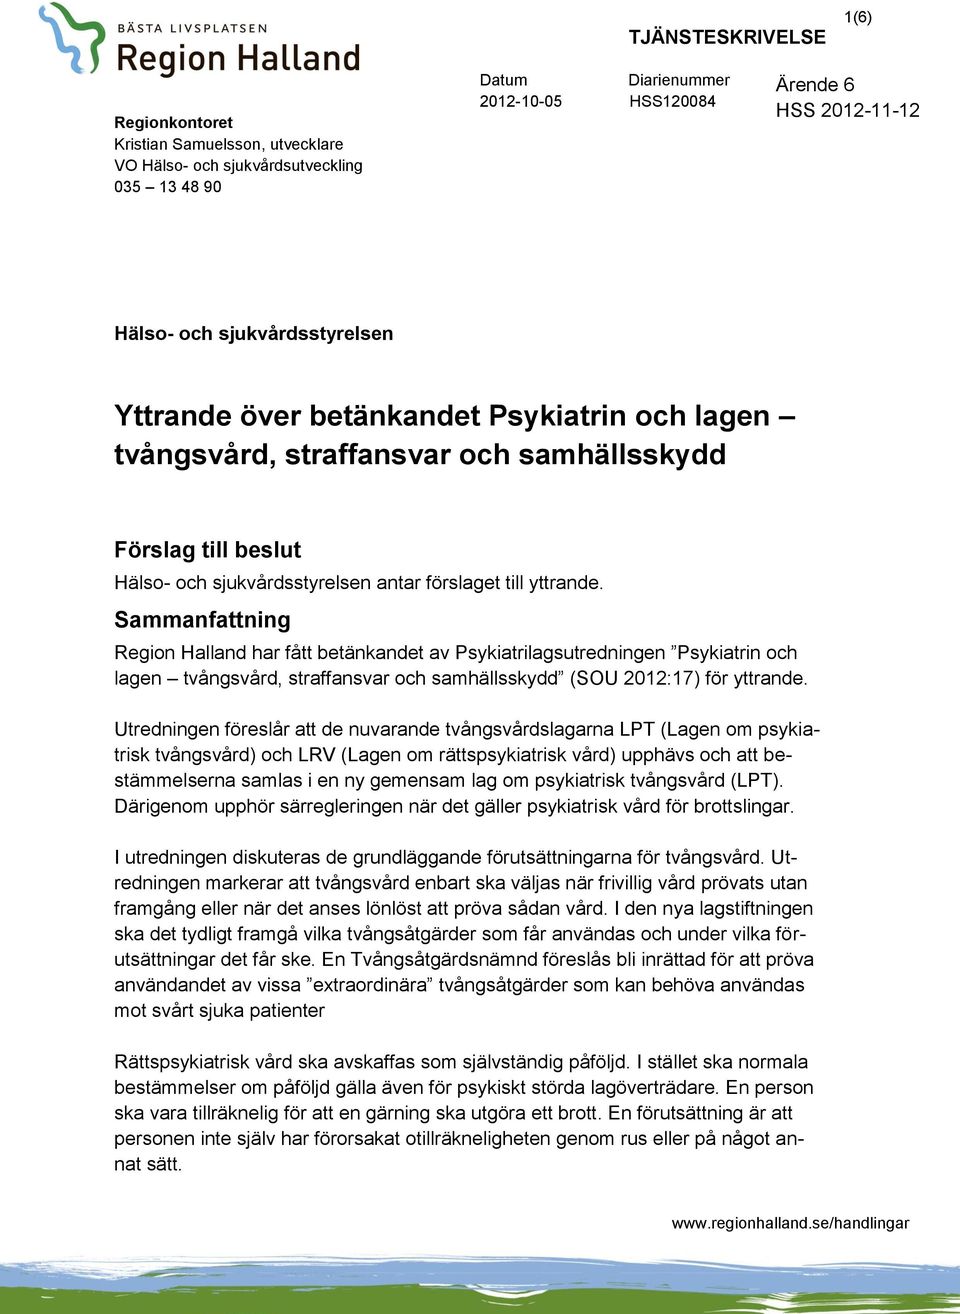 Sammanfattning Region Halland har fått betänkandet av Psykiatrilagsutredningen Psykiatrin och lagen tvångsvård, straffansvar och samhällsskydd (SOU 2012:17) för yttrande.